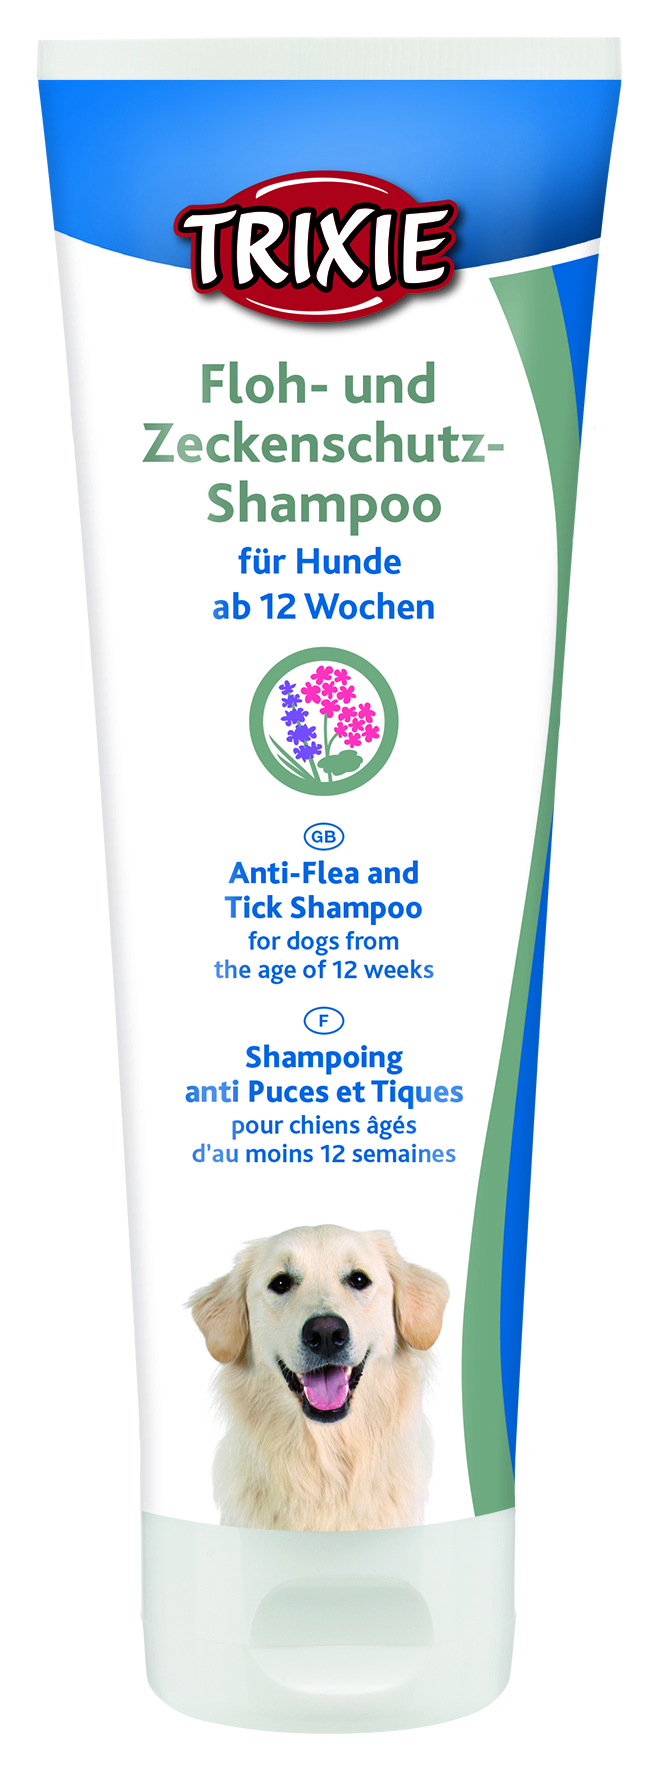 Floh- und Zeckenschutz-Shampoo, 250 ml